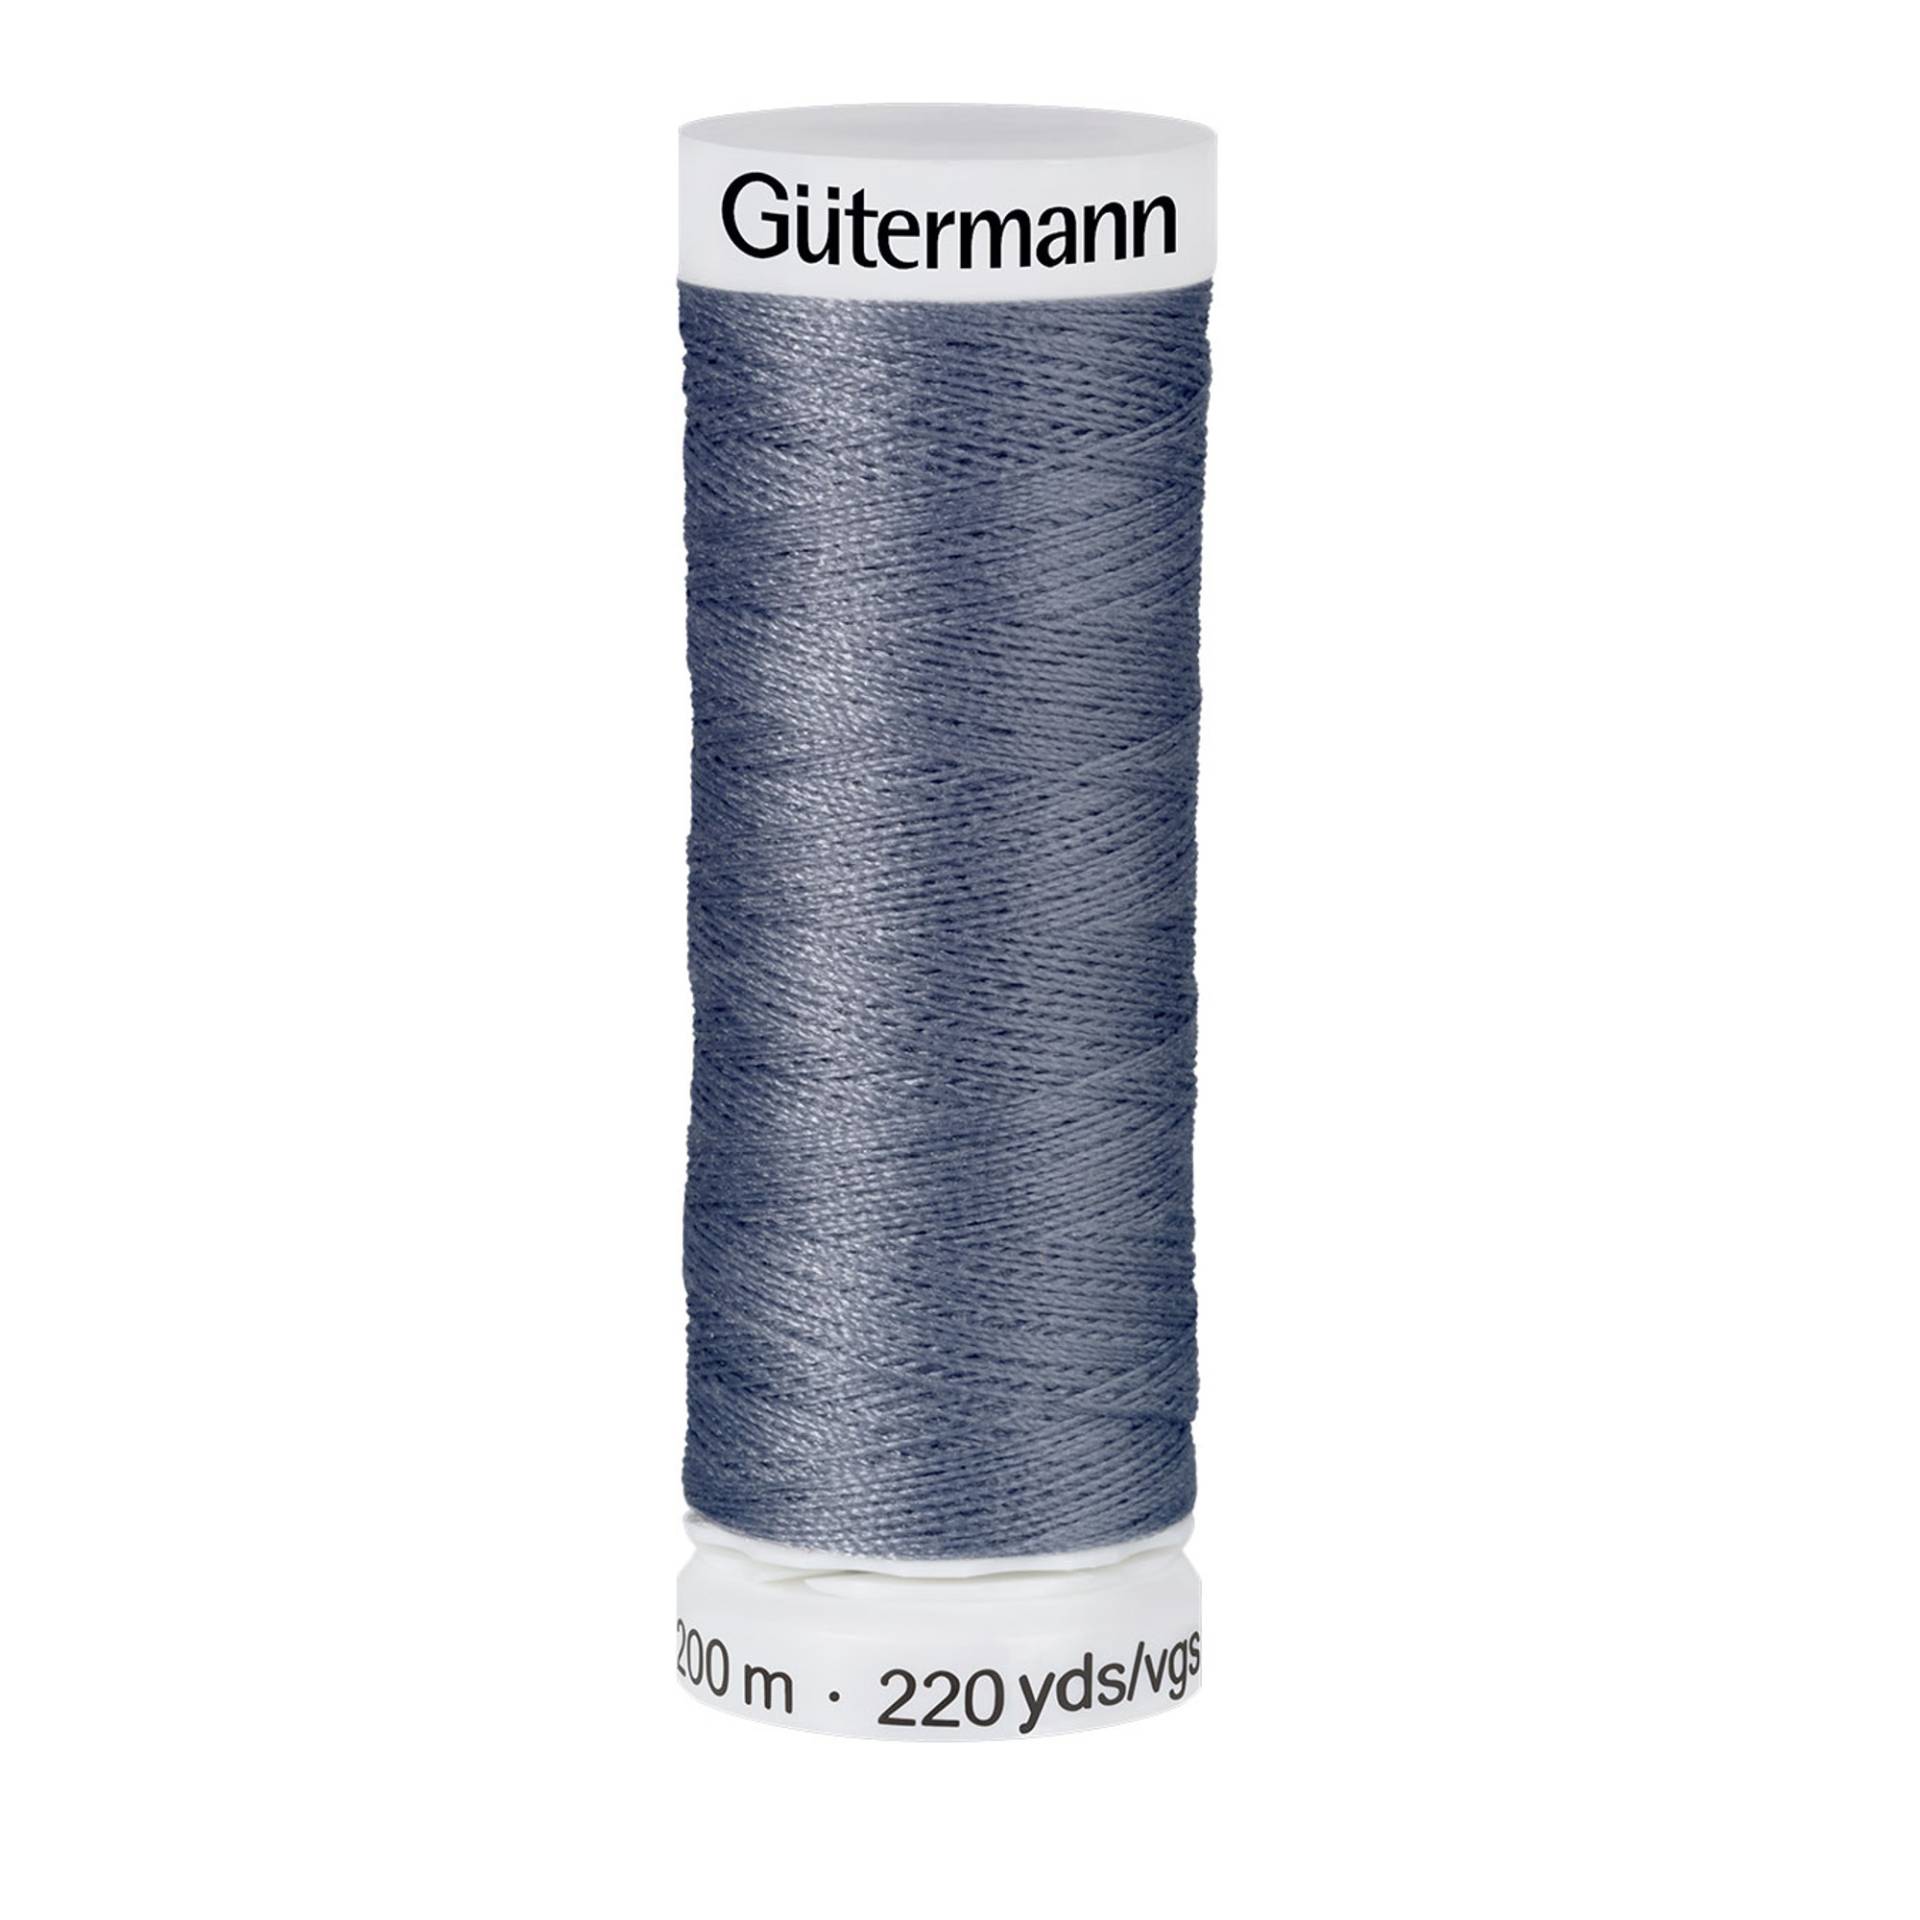 Gütermann Allesnäher (786) graublau von Stoffe Hemmers